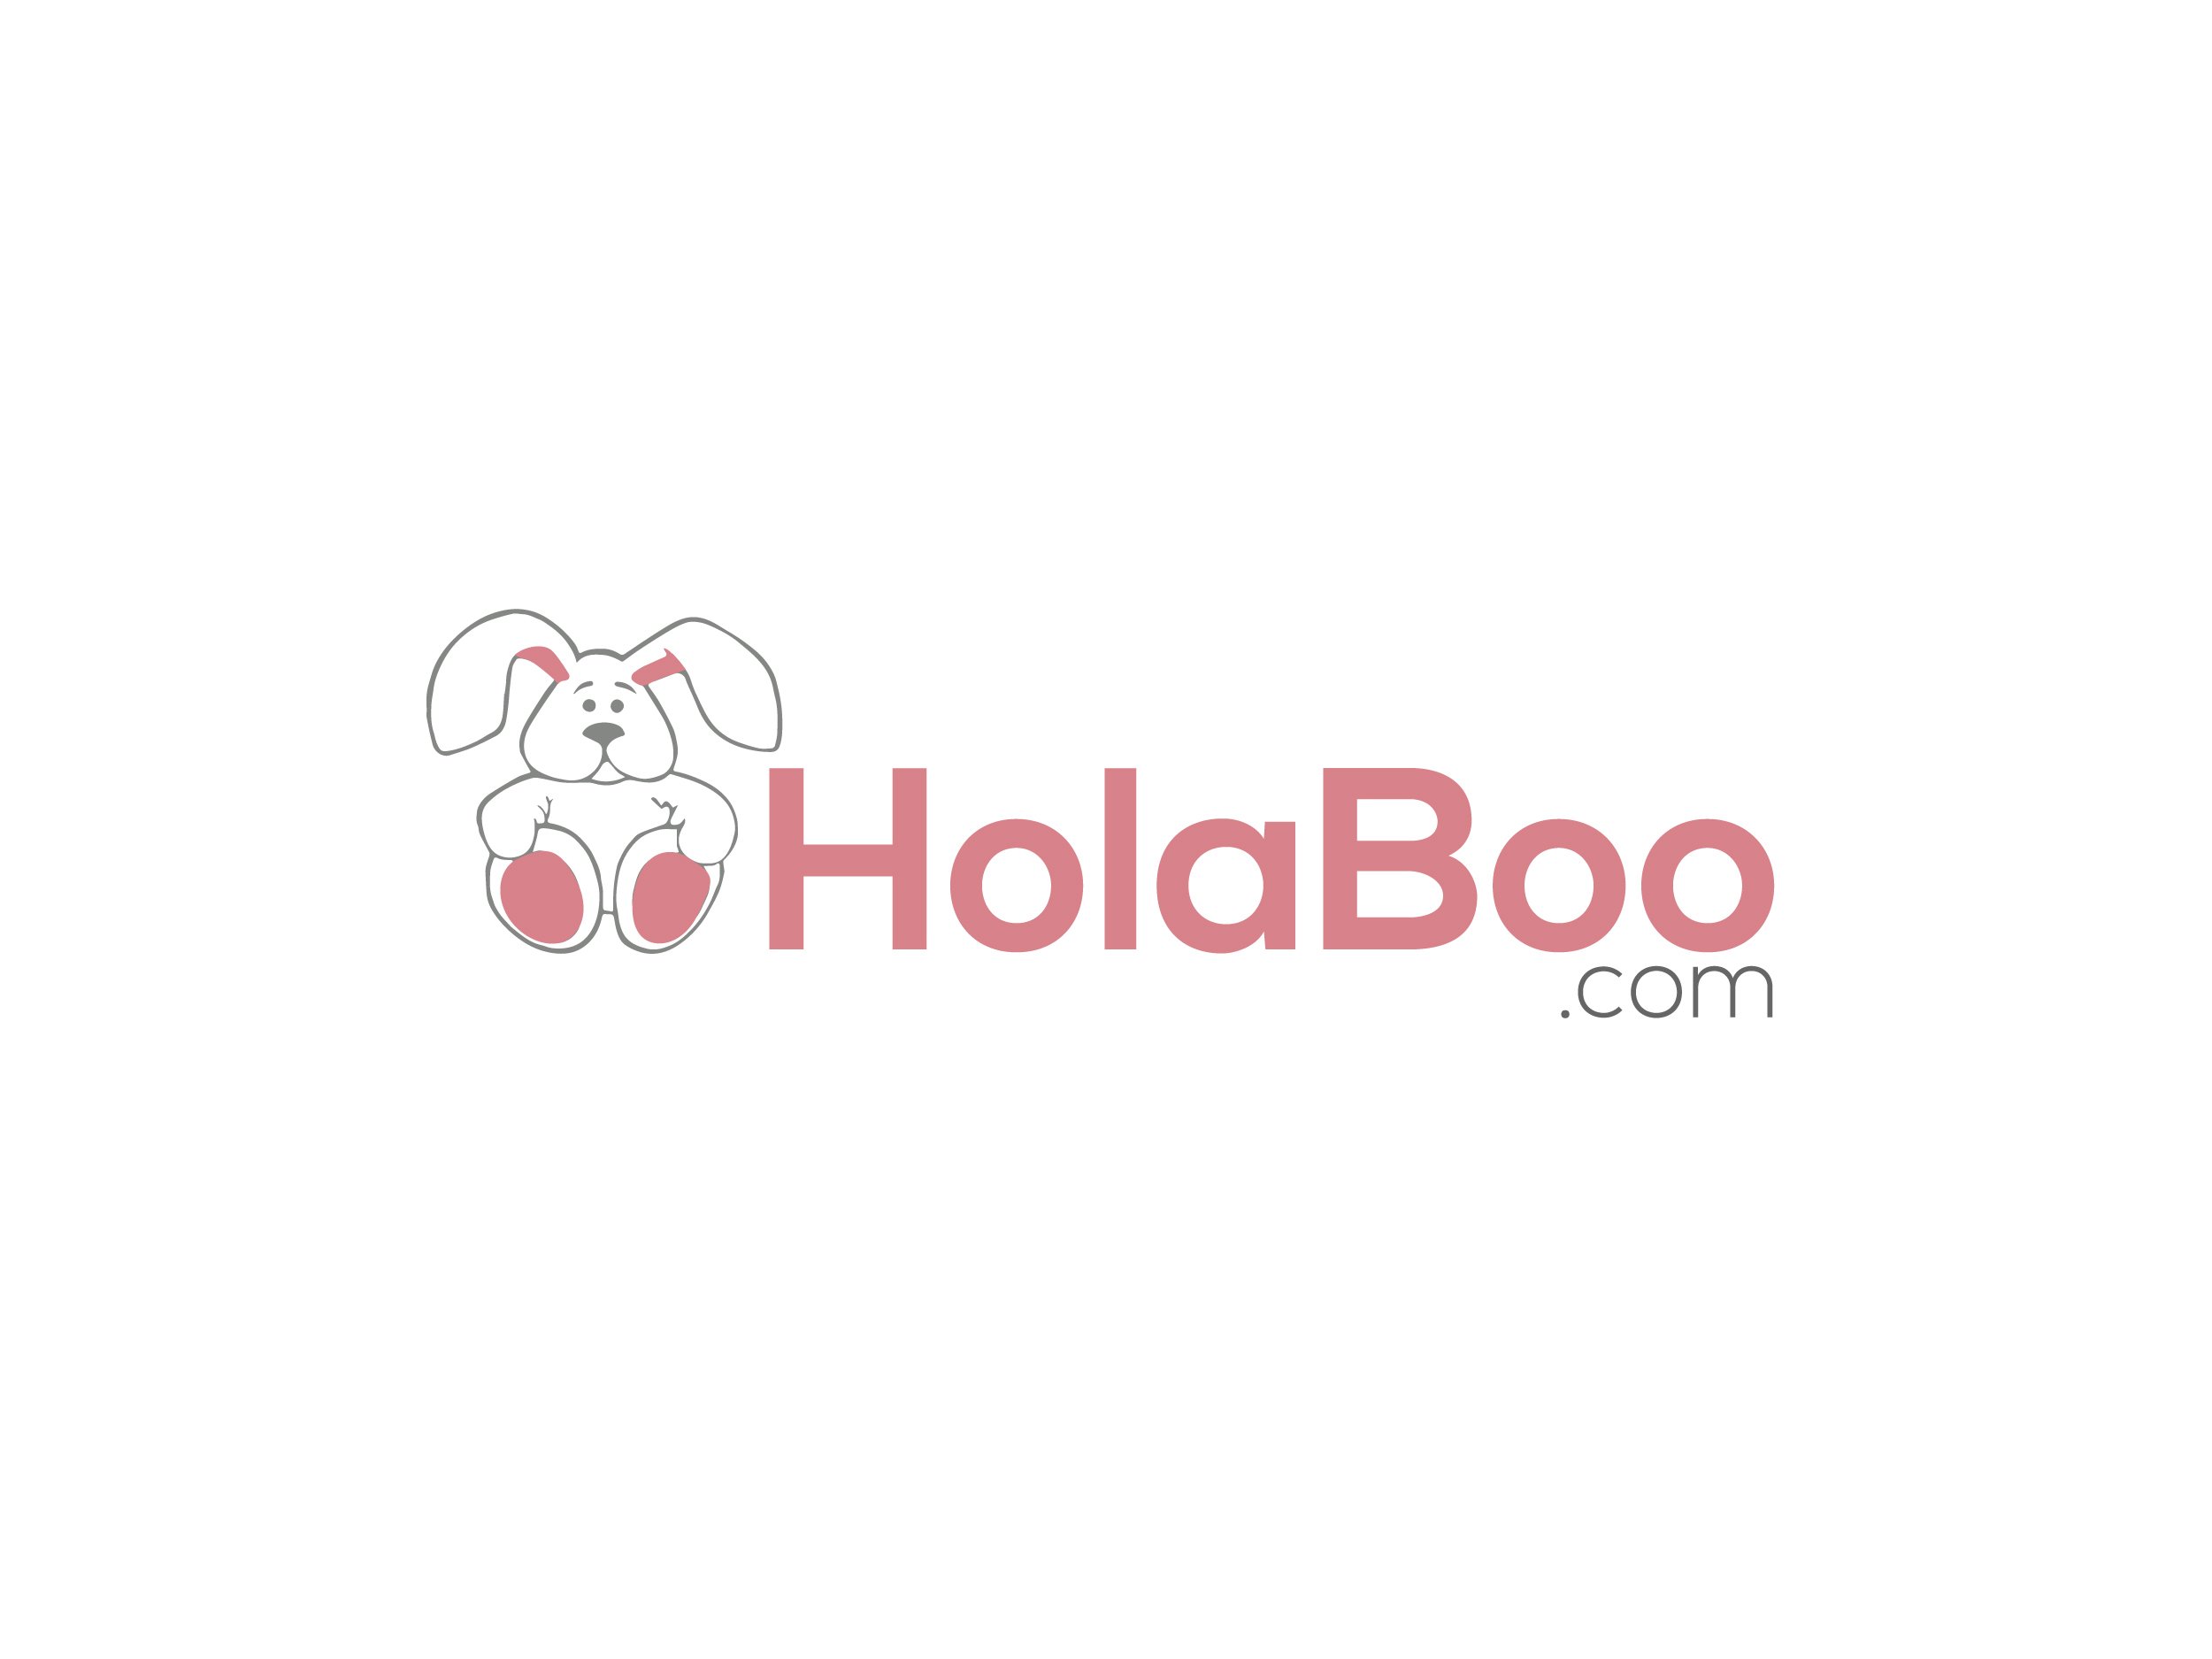  HOLABOO.COM